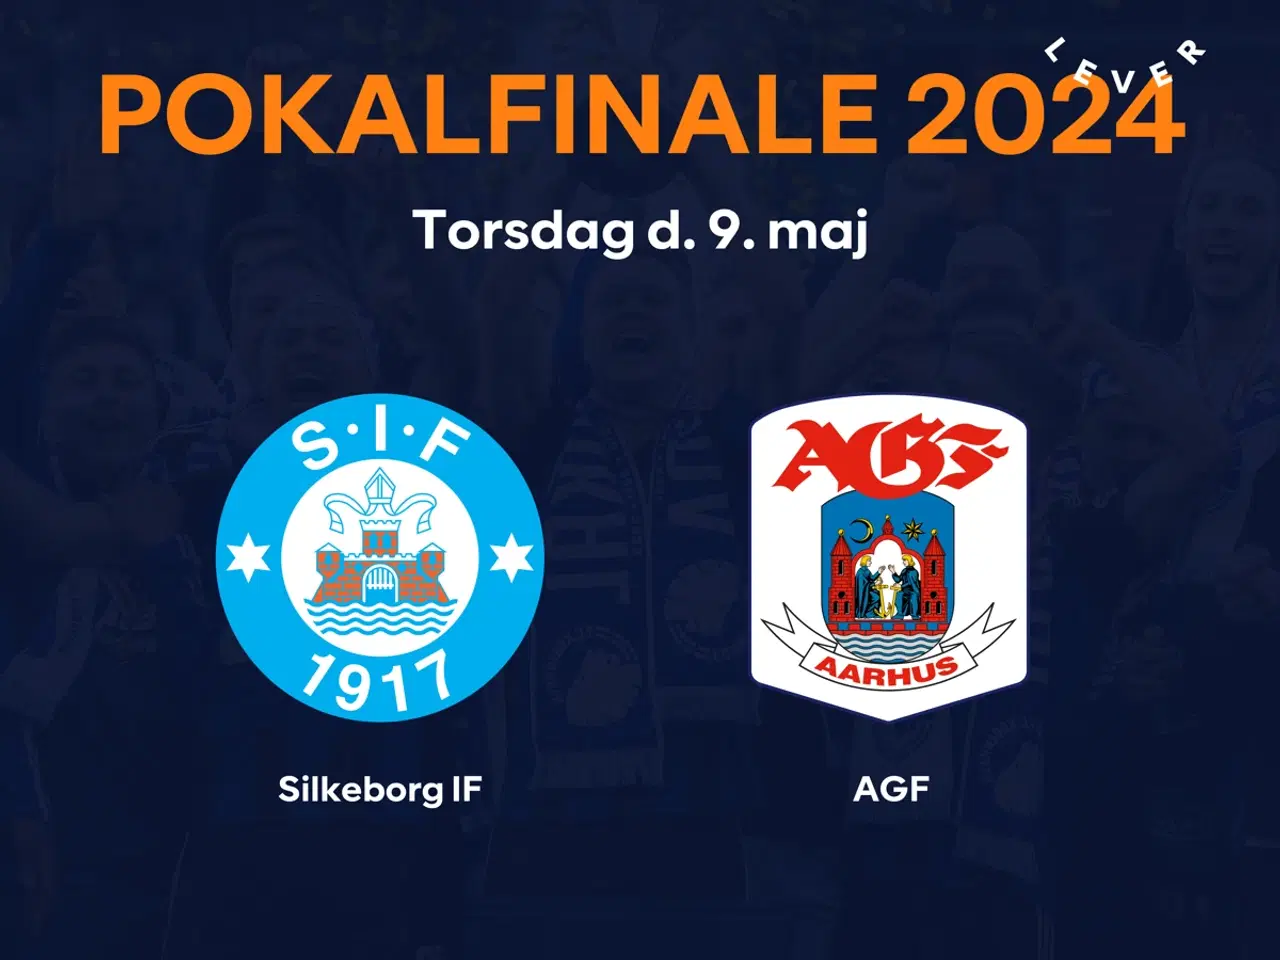 Billede 1 - Søger billetter til Pokalfinale AGF - Silkeborg